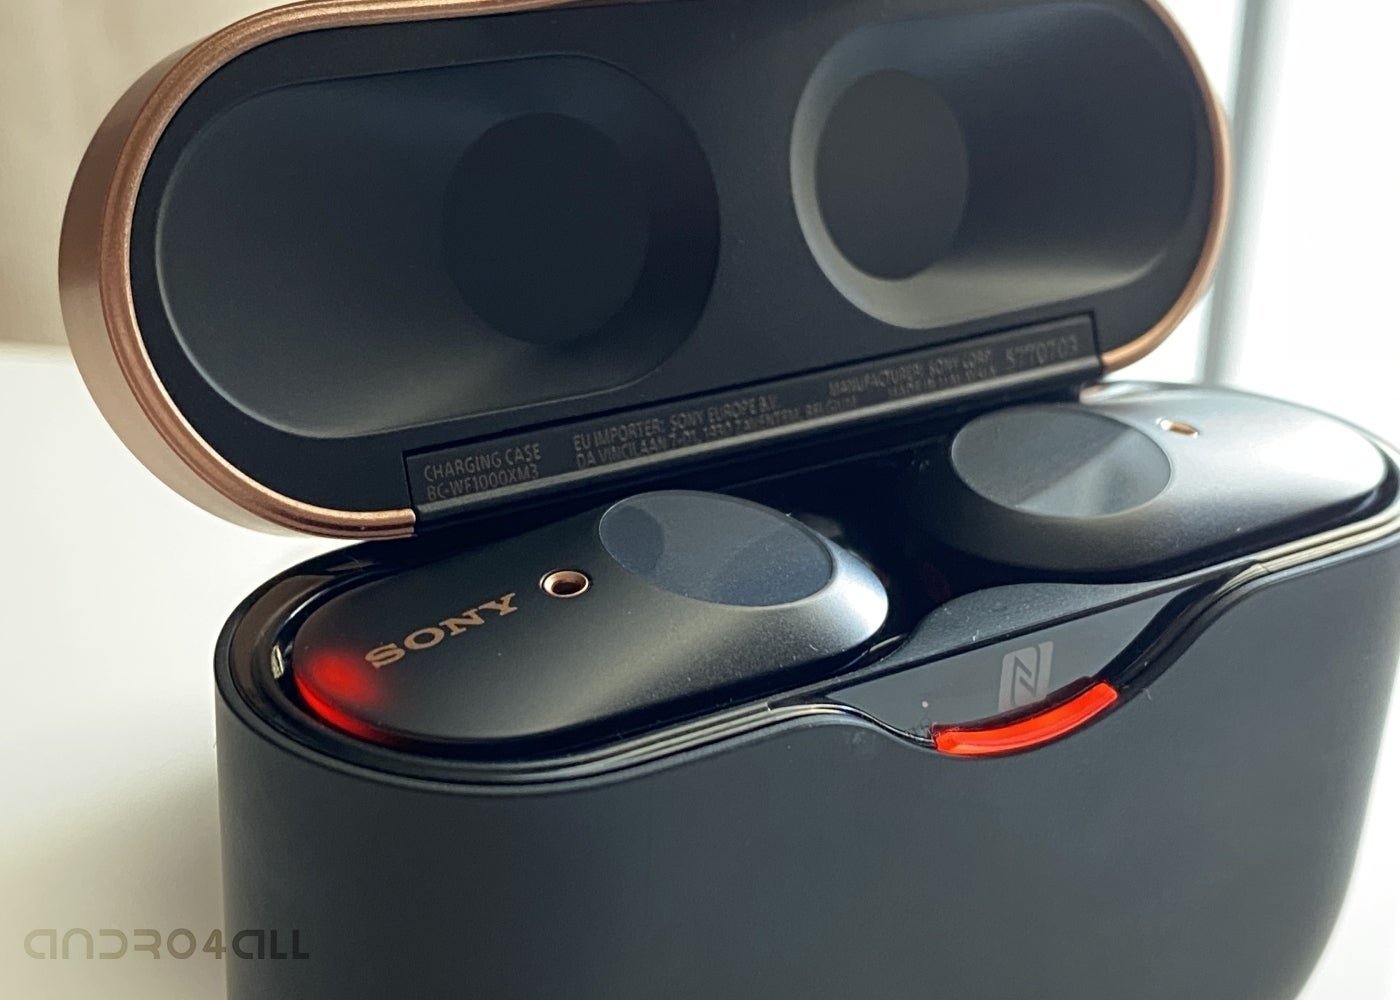 Sony WF-1000XM3, análisis: review con características, precio y  especificaciones